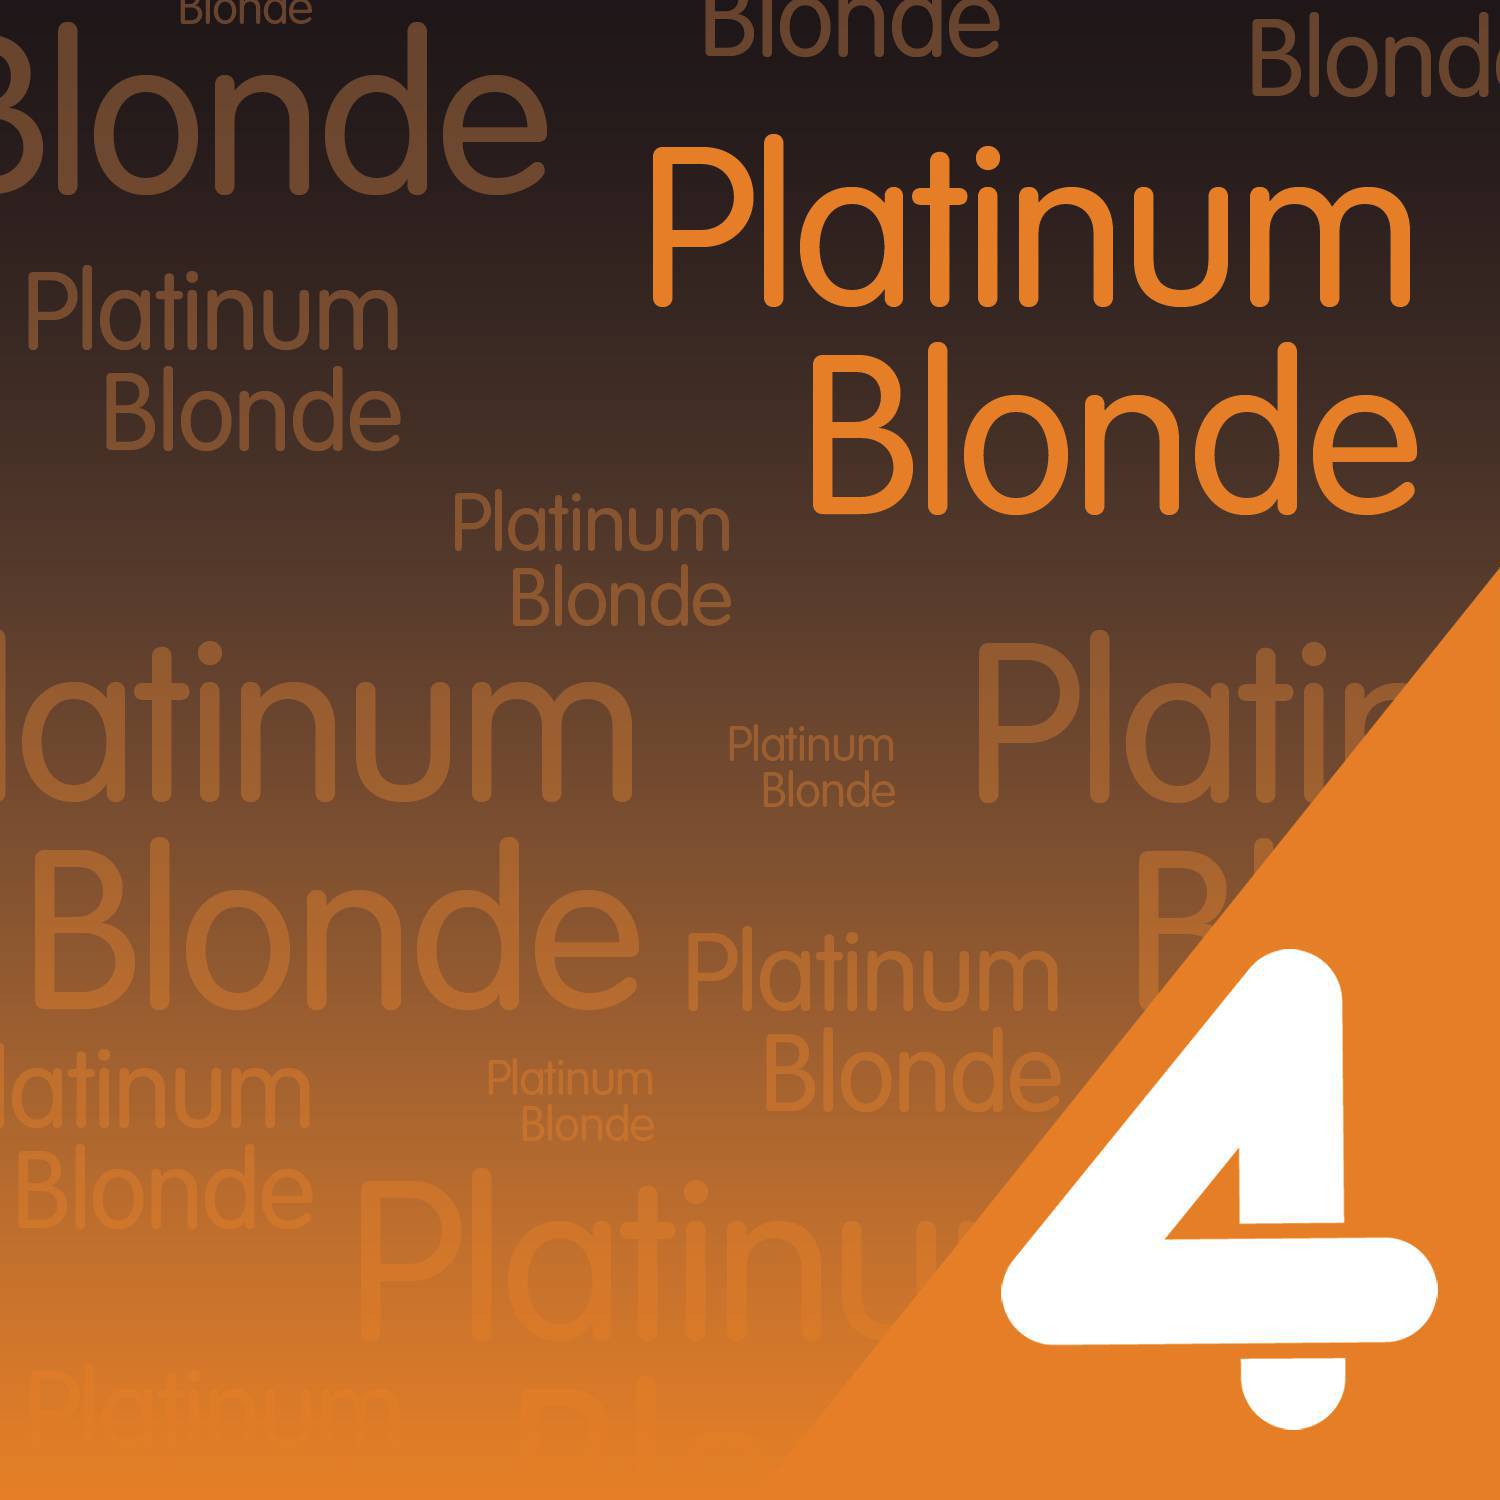 Platinum Blonde - Not in Love